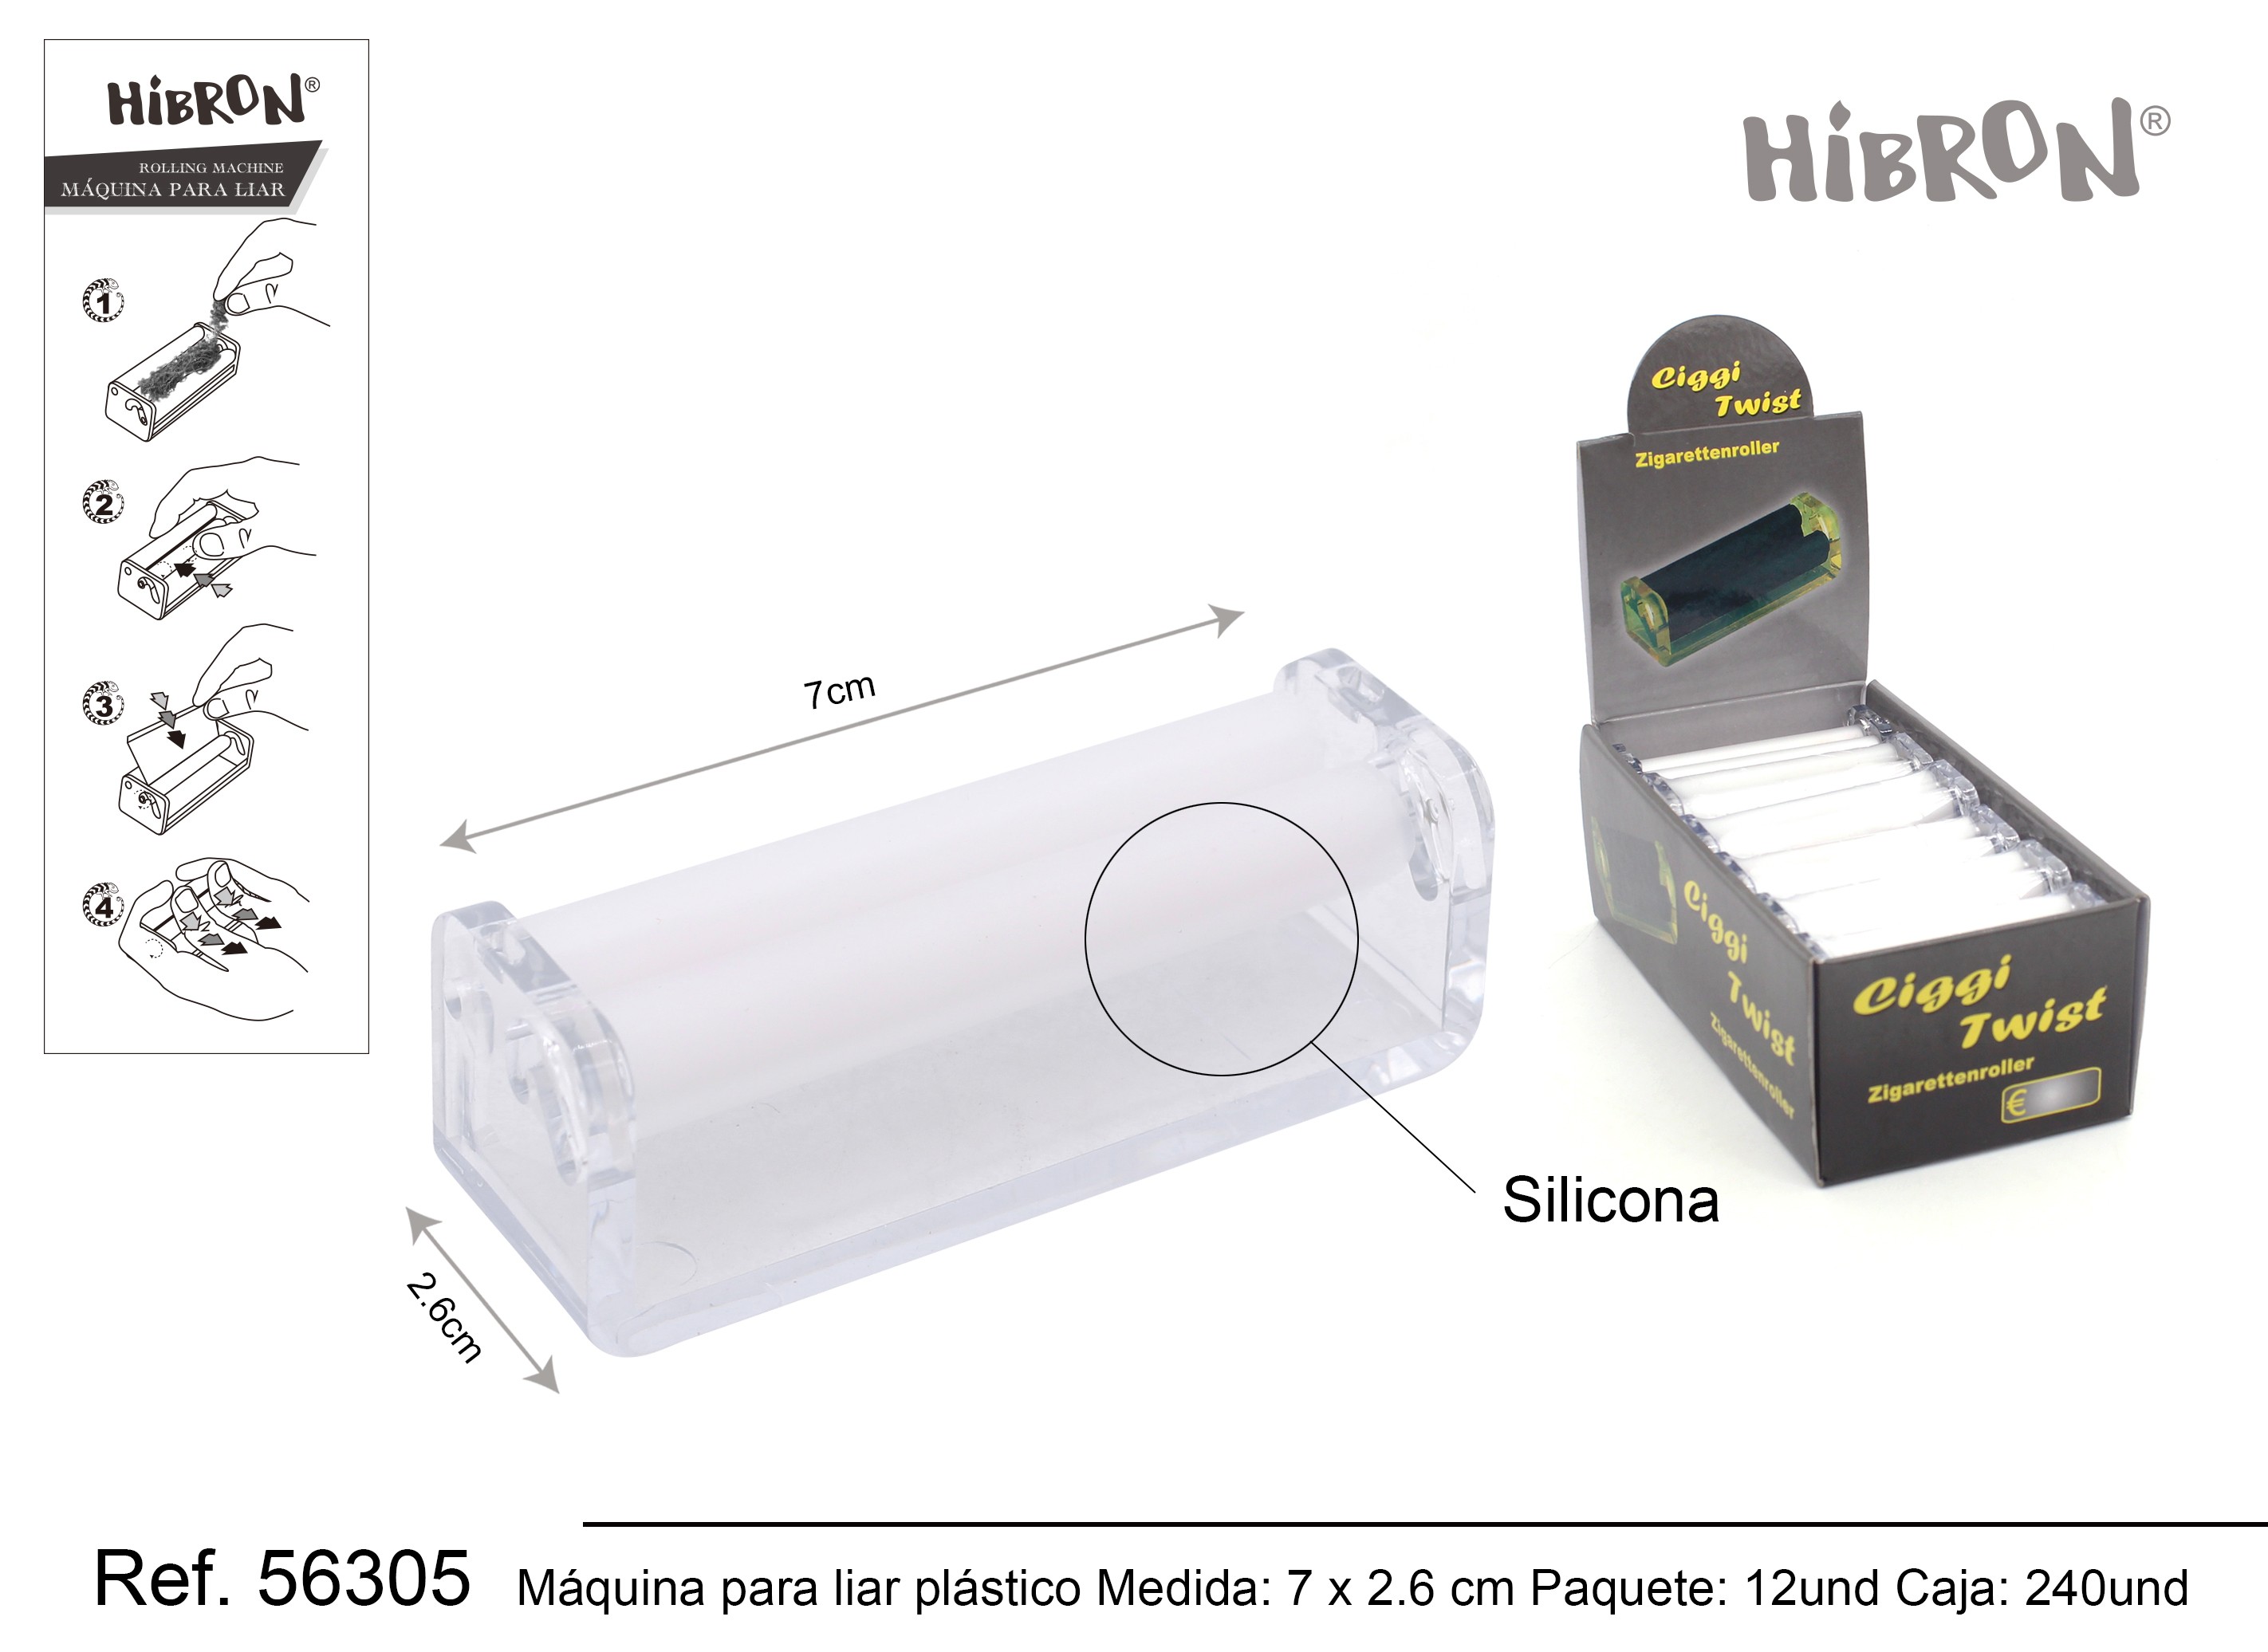 HIBRON, Maquina de liar con Estuche 70mm,56320,1x8 